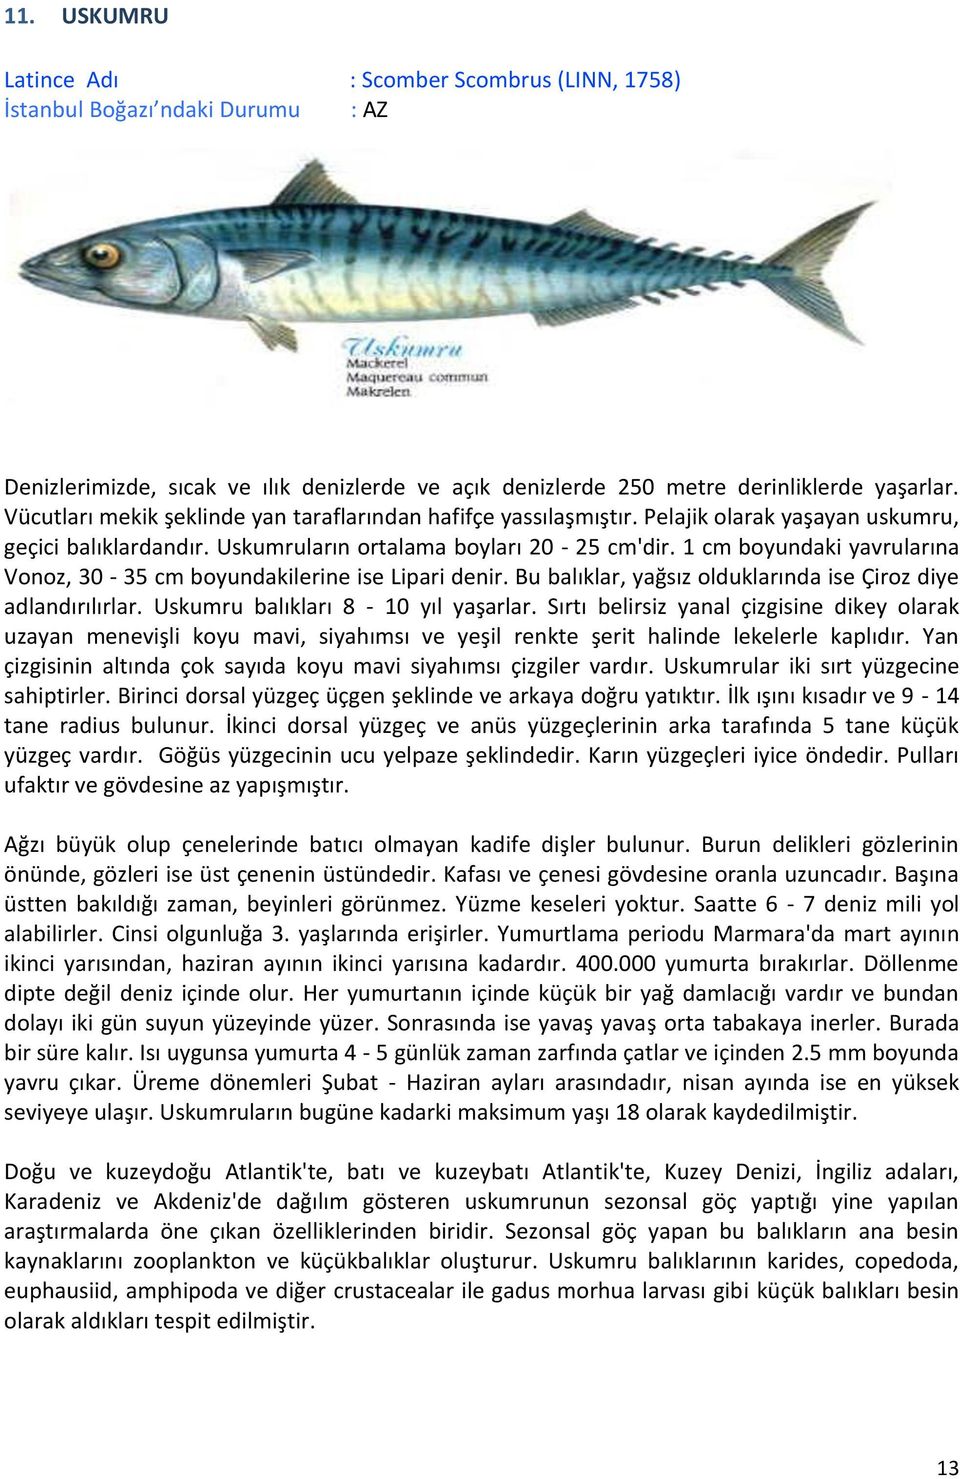 1 cm boyundaki yavrularına Vonoz, 30-35 cm boyundakilerine ise Lipari denir. Bu balıklar, yağsız olduklarında ise Çiroz diye adlandırılırlar. Uskumru balıkları 8-10 yıl yaşarlar.